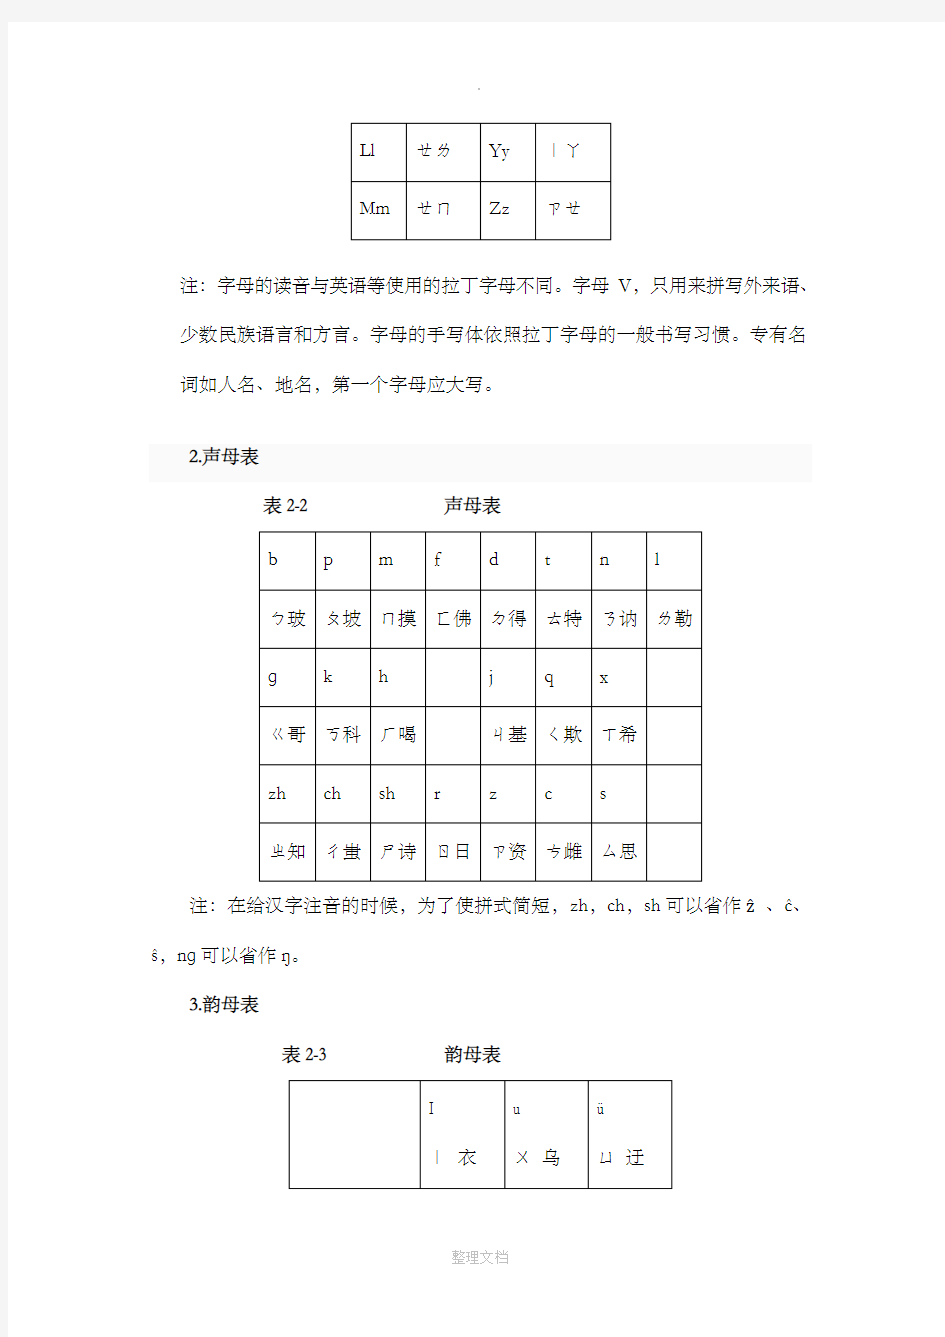 汉语拼音方案和国际音标